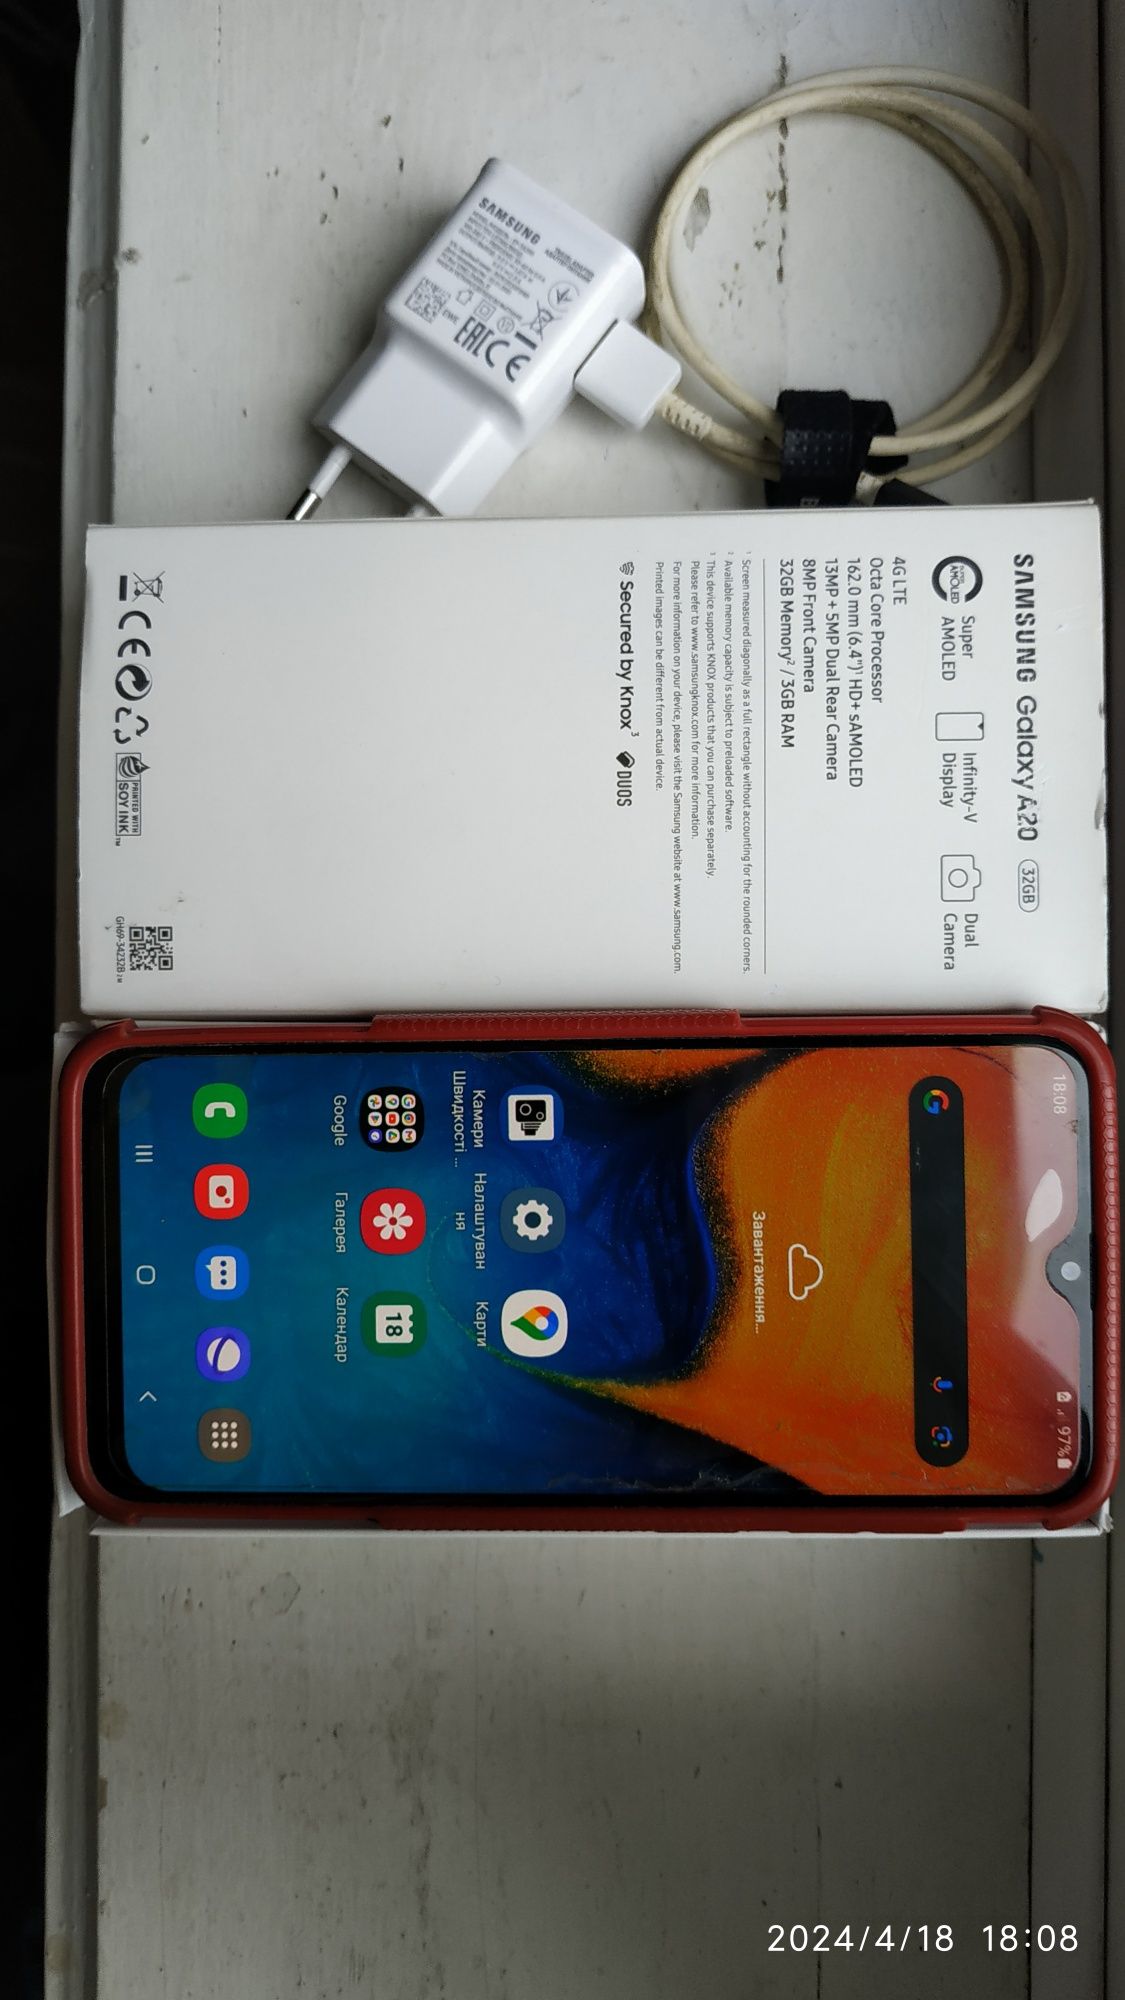 Samsung Galaxy A20 2019 3/32GB